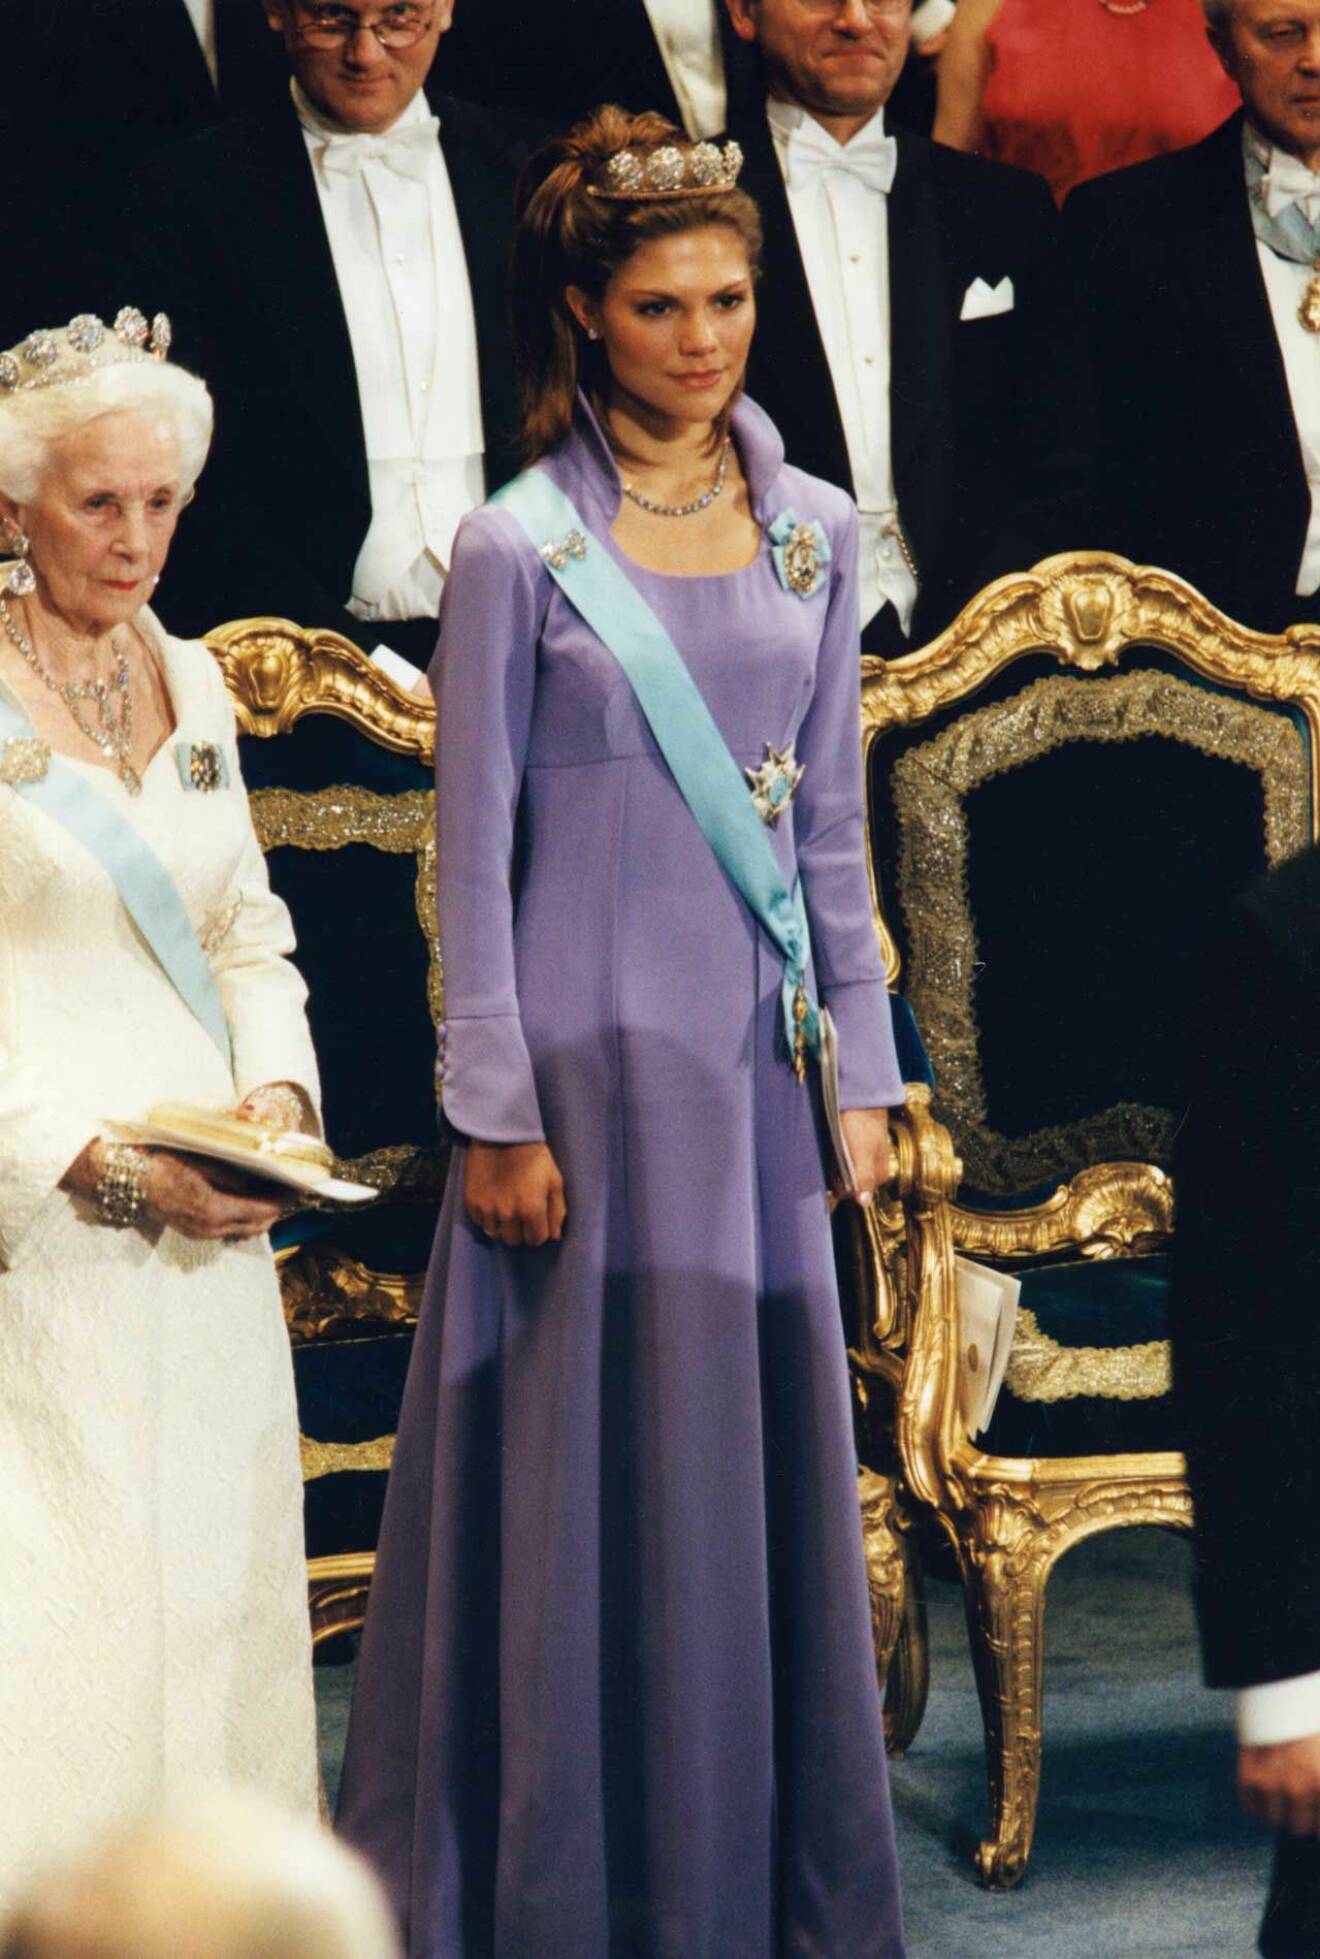 Kronprinsessan Victoria bar en lila klänning från Göran Alfredsson på nobel 1997 